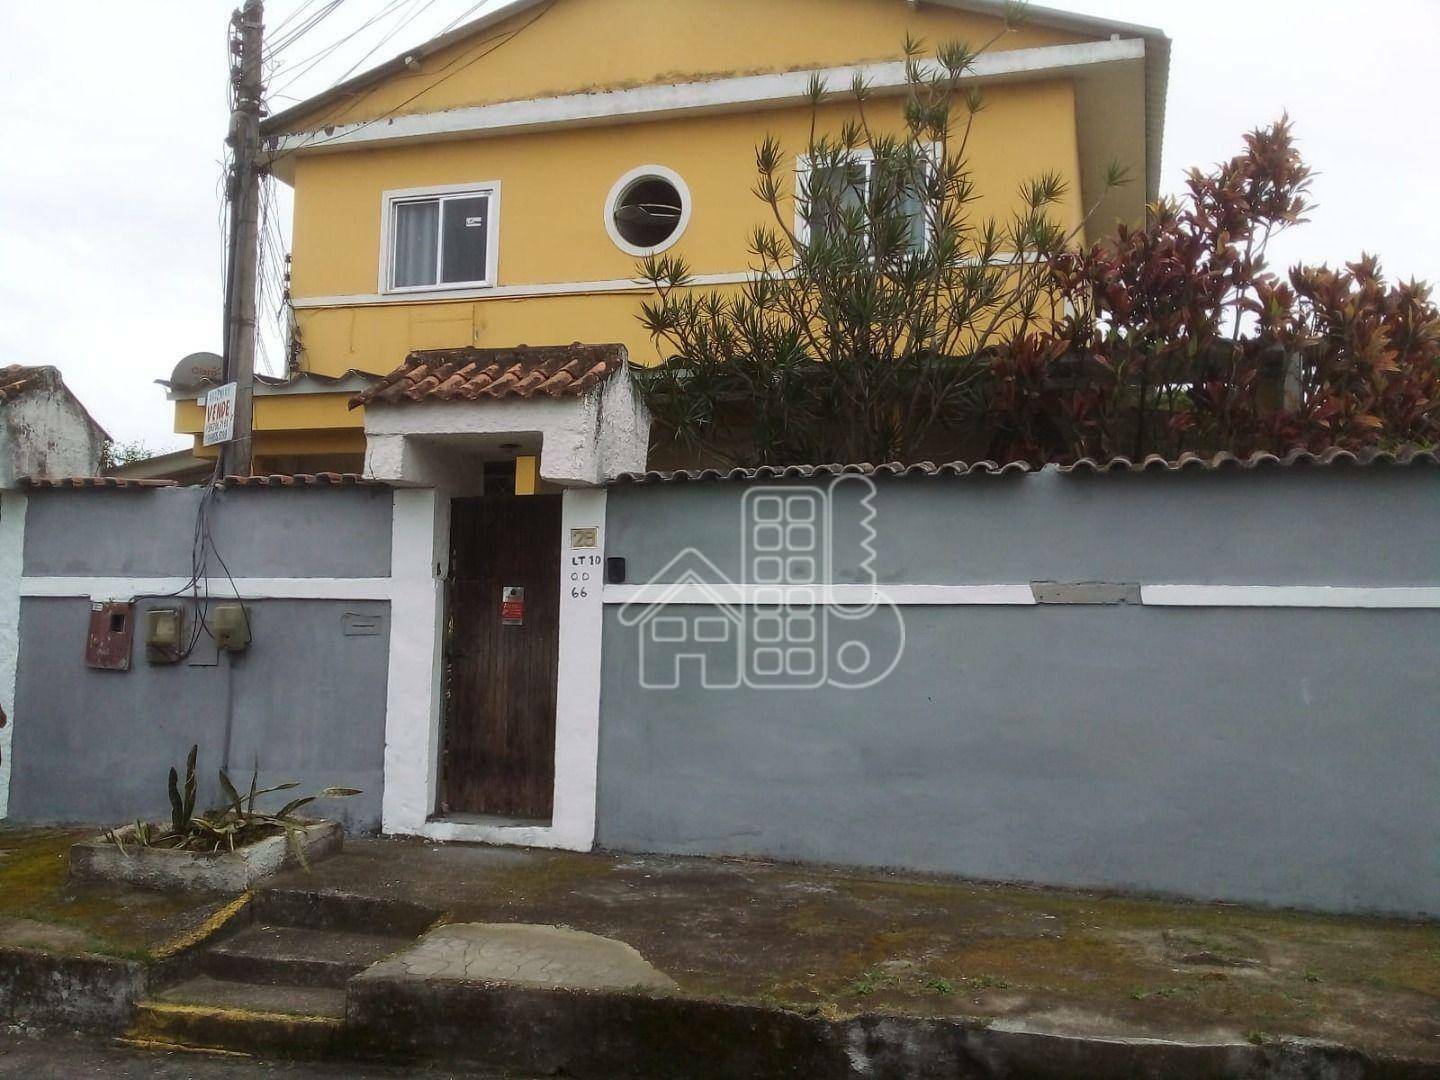 Casa à venda, 138 m² por R$ 900.000,00 - Araçatiba - Maricá/RJ